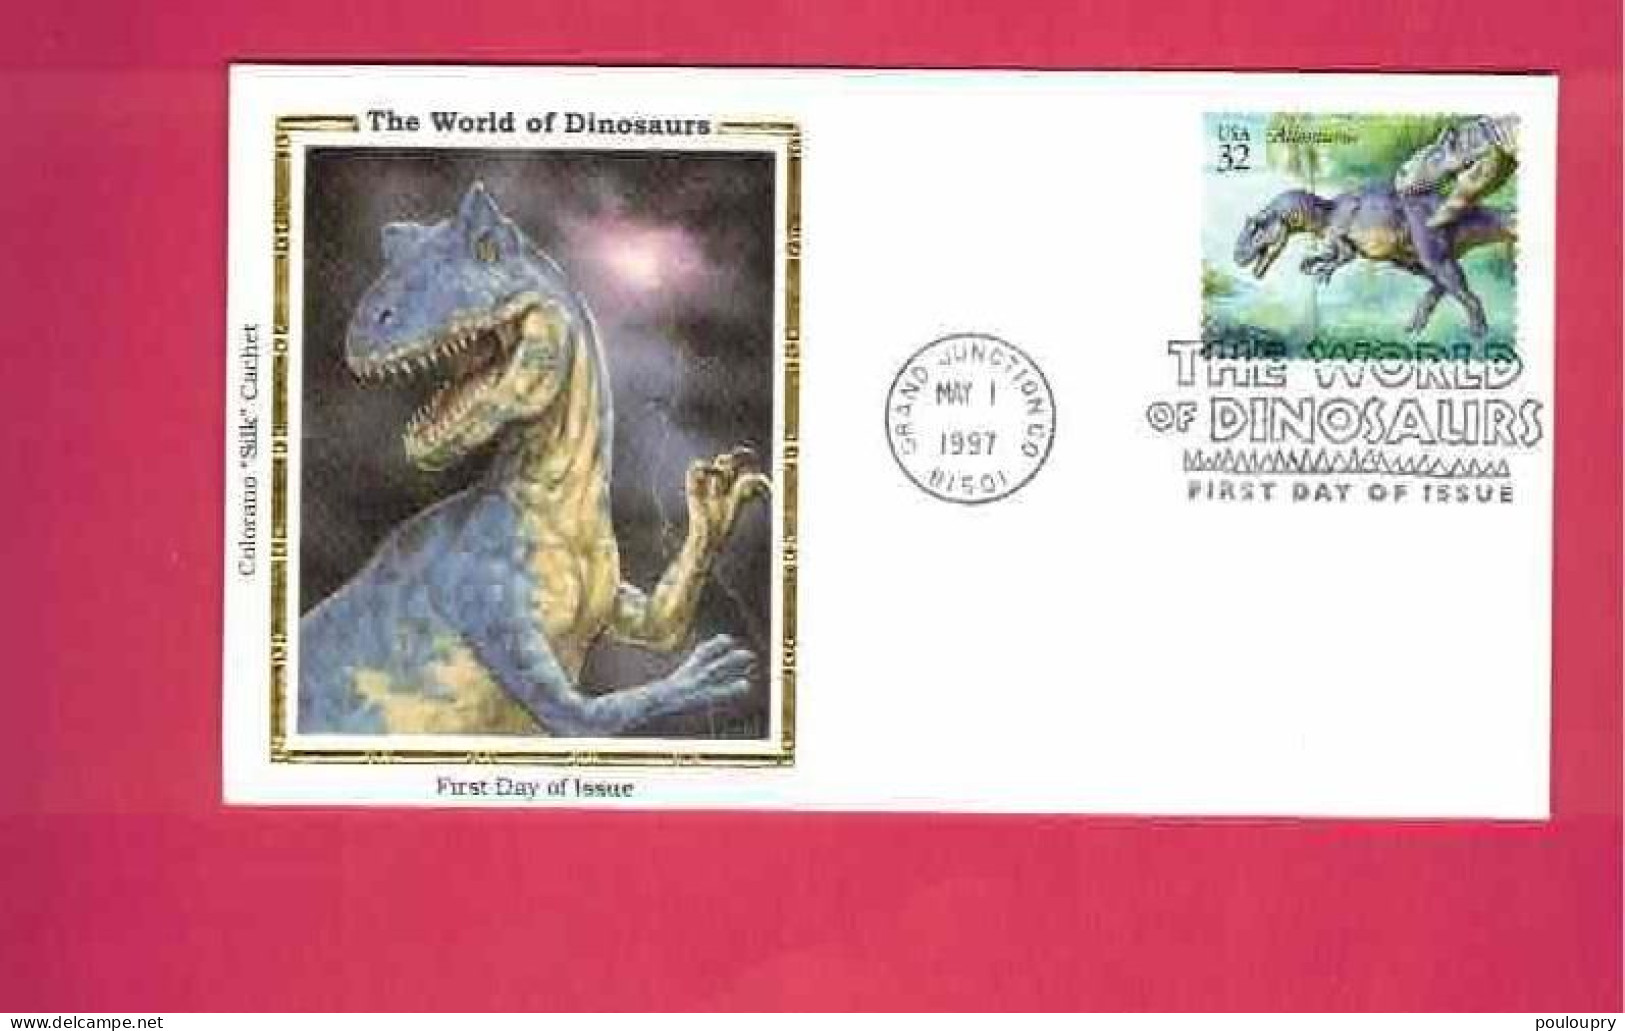 FDC Des USA EUAN De 1997 - YT N° 2595 - Allosaurus - Prehistorics